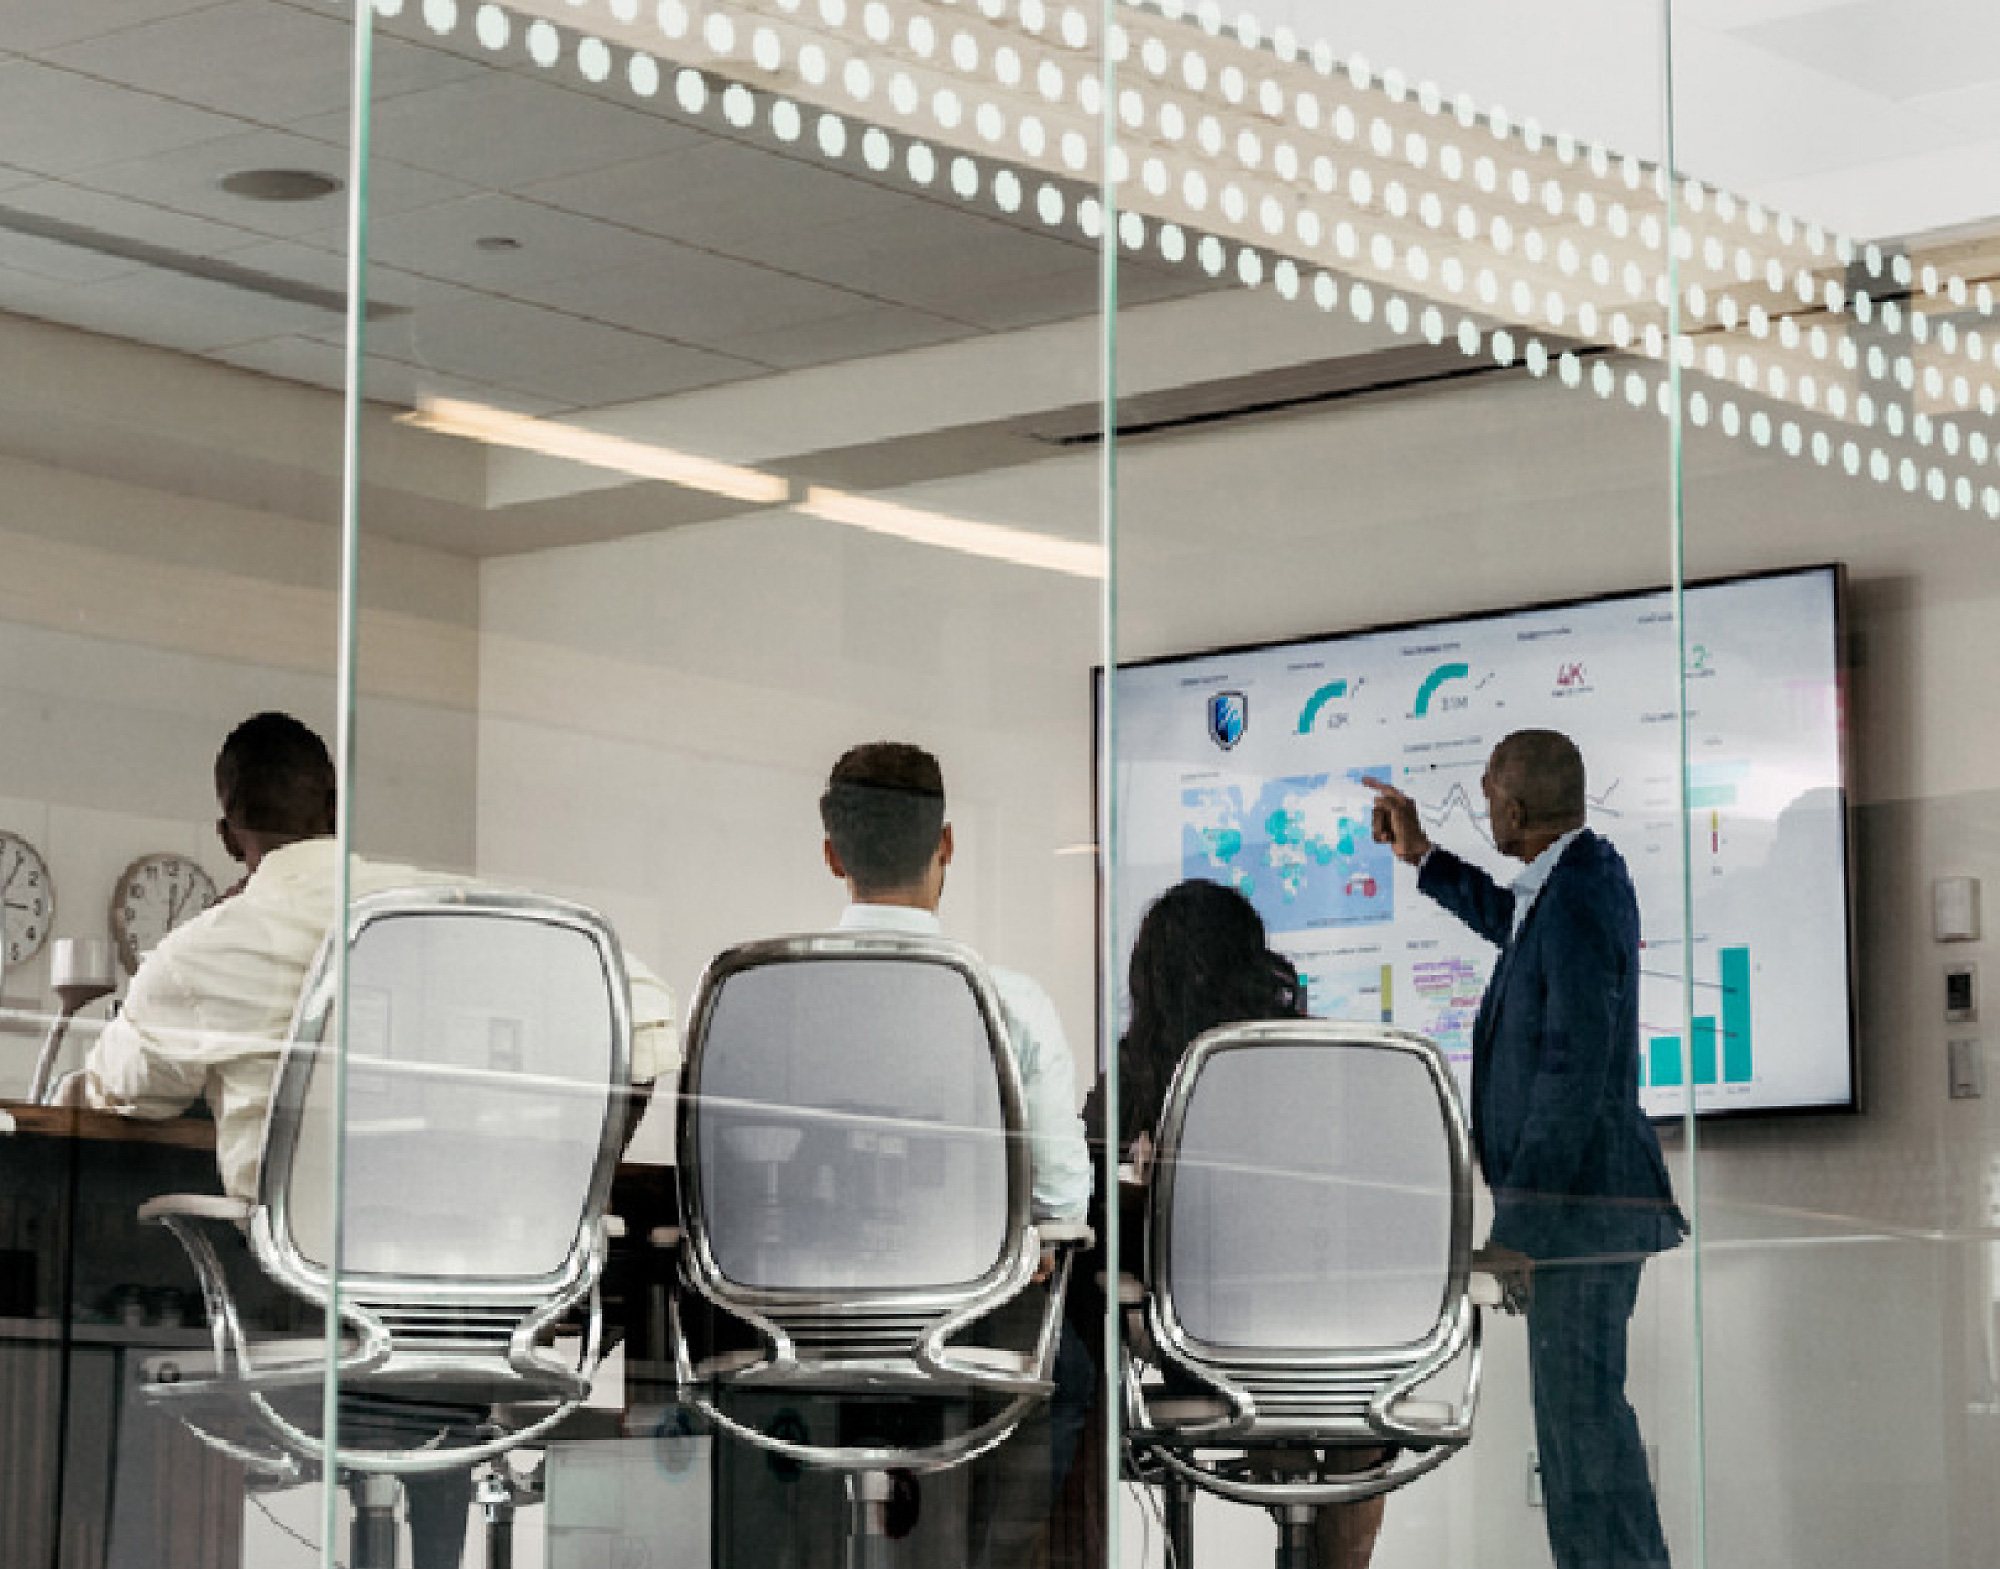 透过玻璃墙看到会议室中有四名专业人员，其中一位指向大屏幕上显示的数字数据。